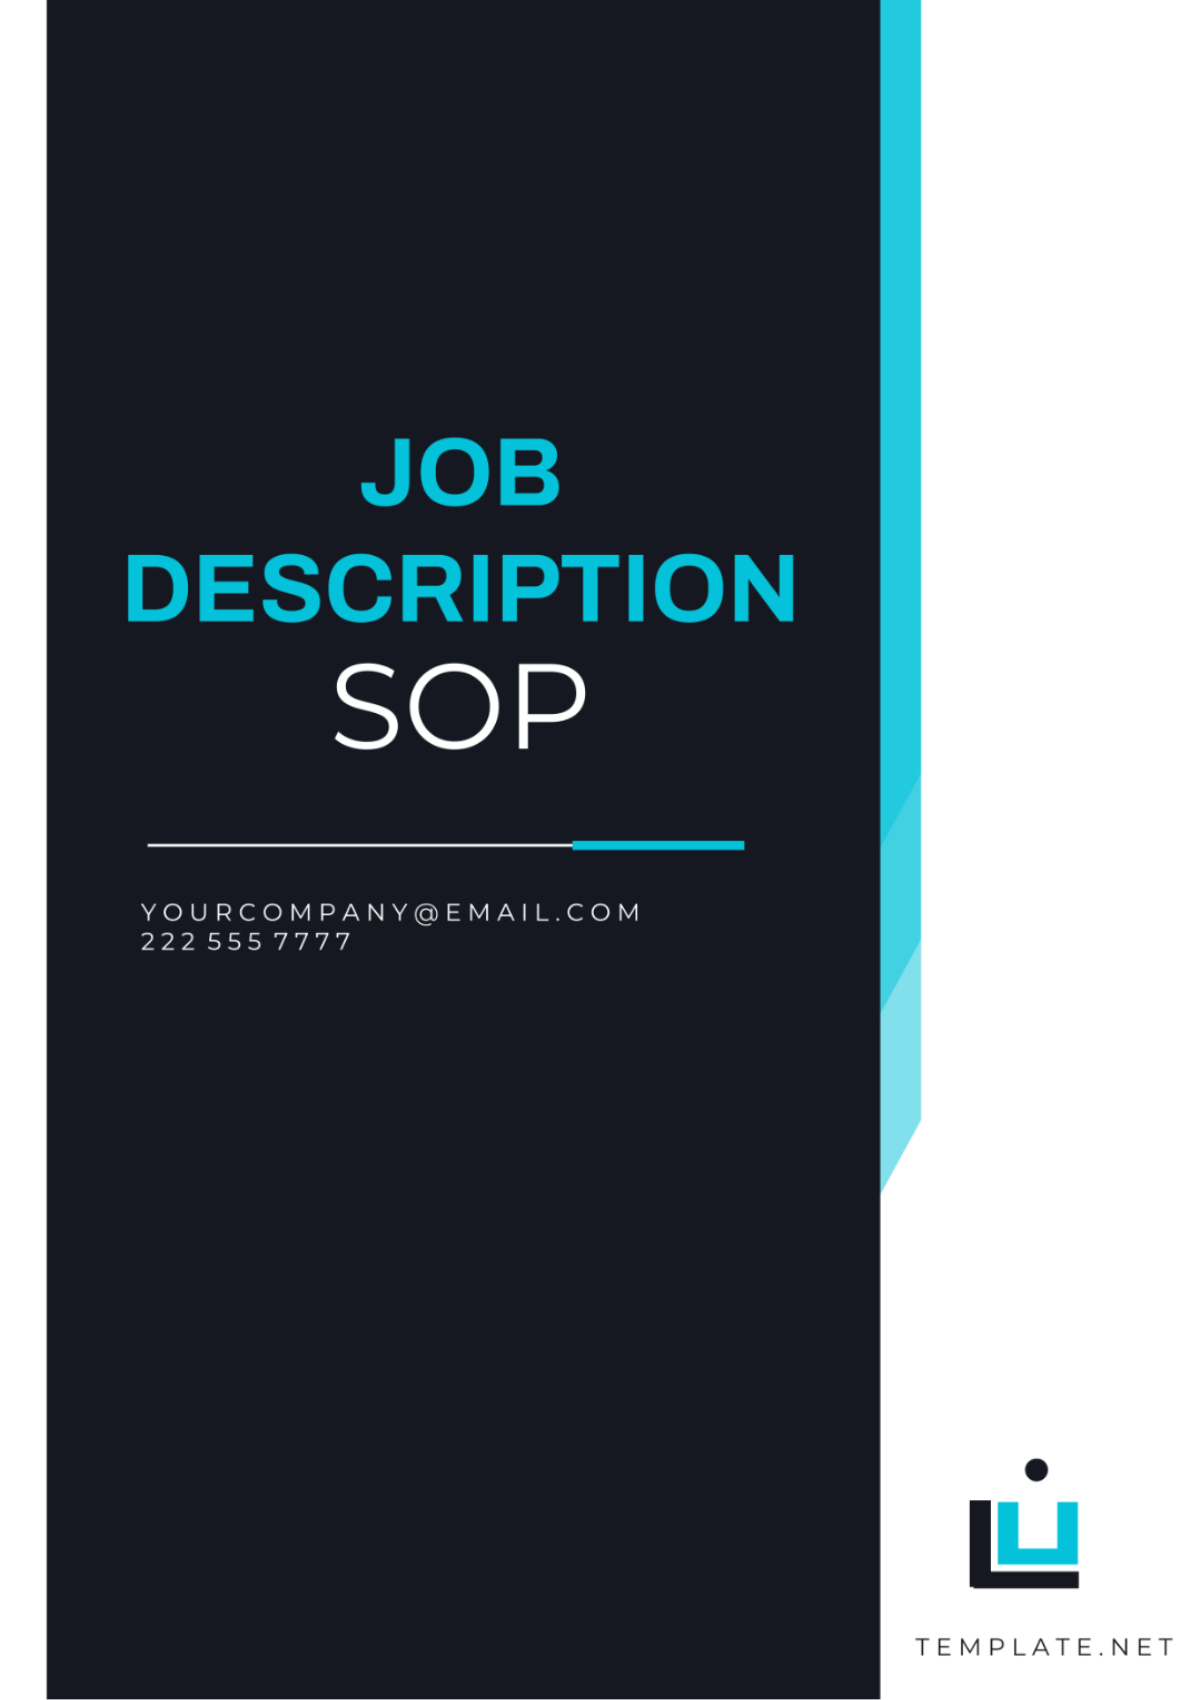 Free Job Description SOP Template